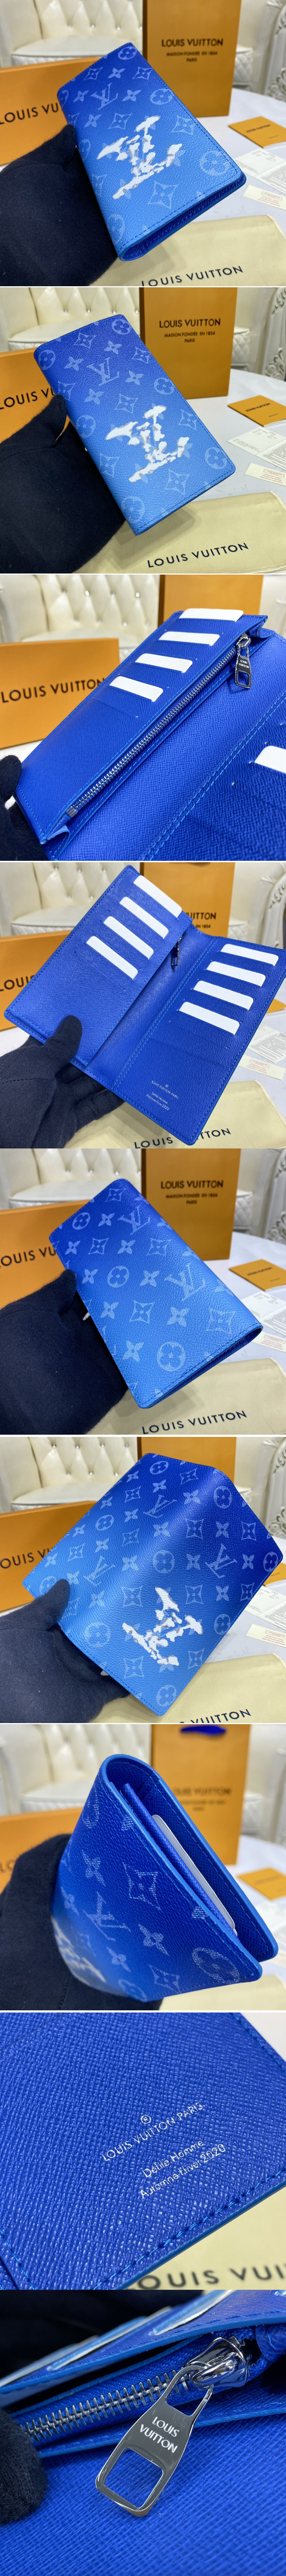 Louis Vuitton Virgil Abloh Monogram Clouds Brazza Long Wallet